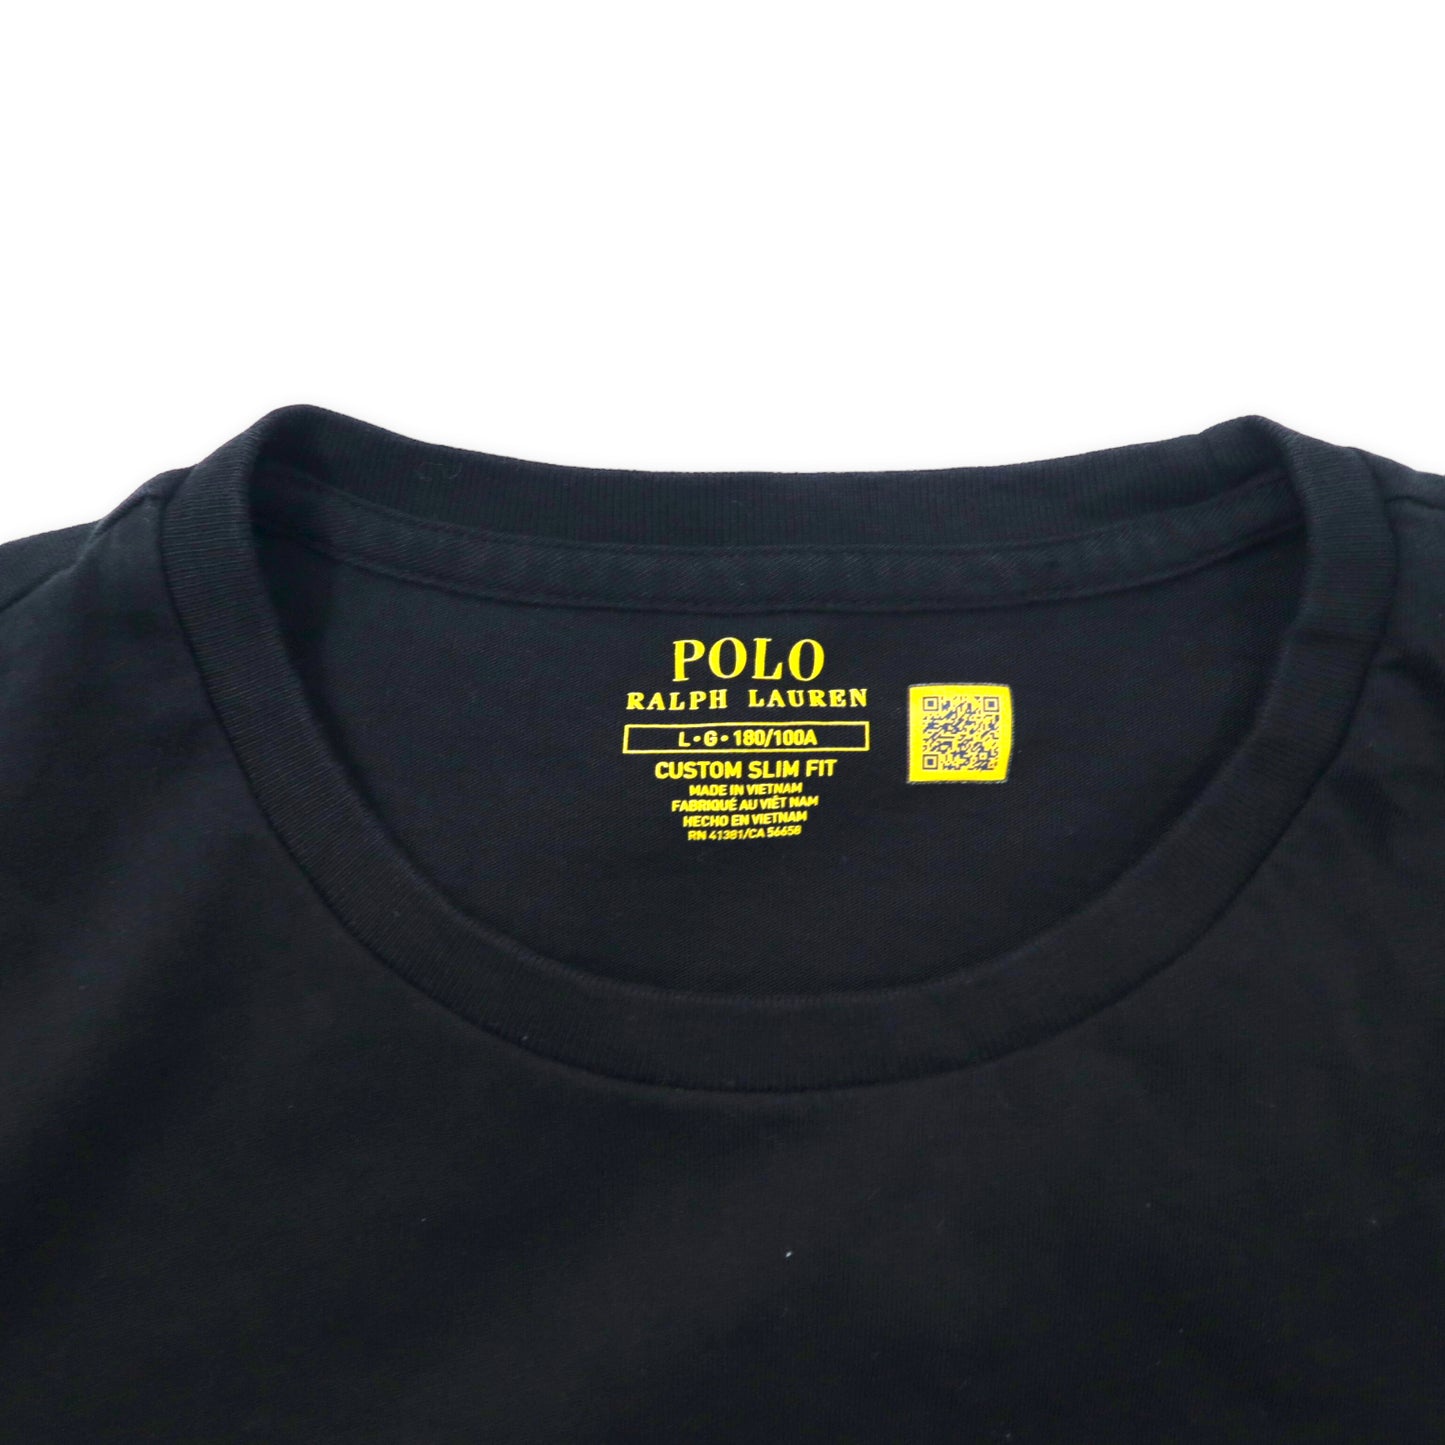 POLO RALPH LAUREN ロングスリーブ Tシャツ L ブラック コットン スモールポニー刺繍 CUSTOM SLIM FIT